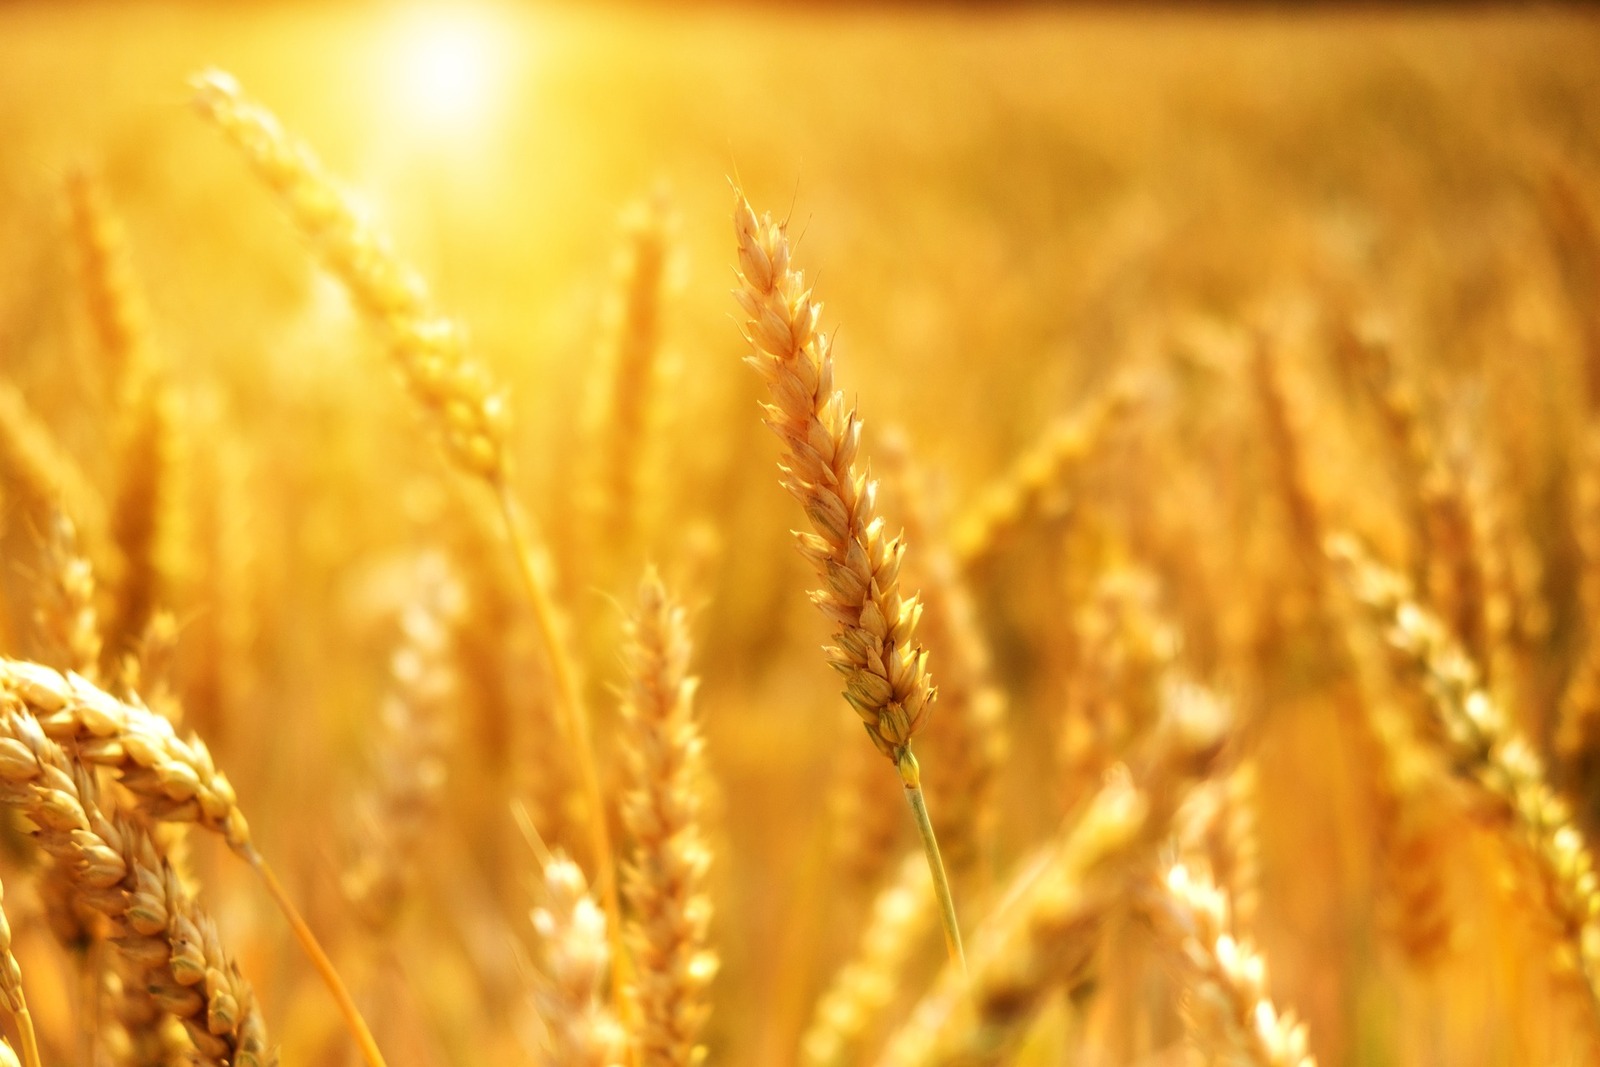 Производителям зерна в регионах правительство направит более 10 миллиардов рублей